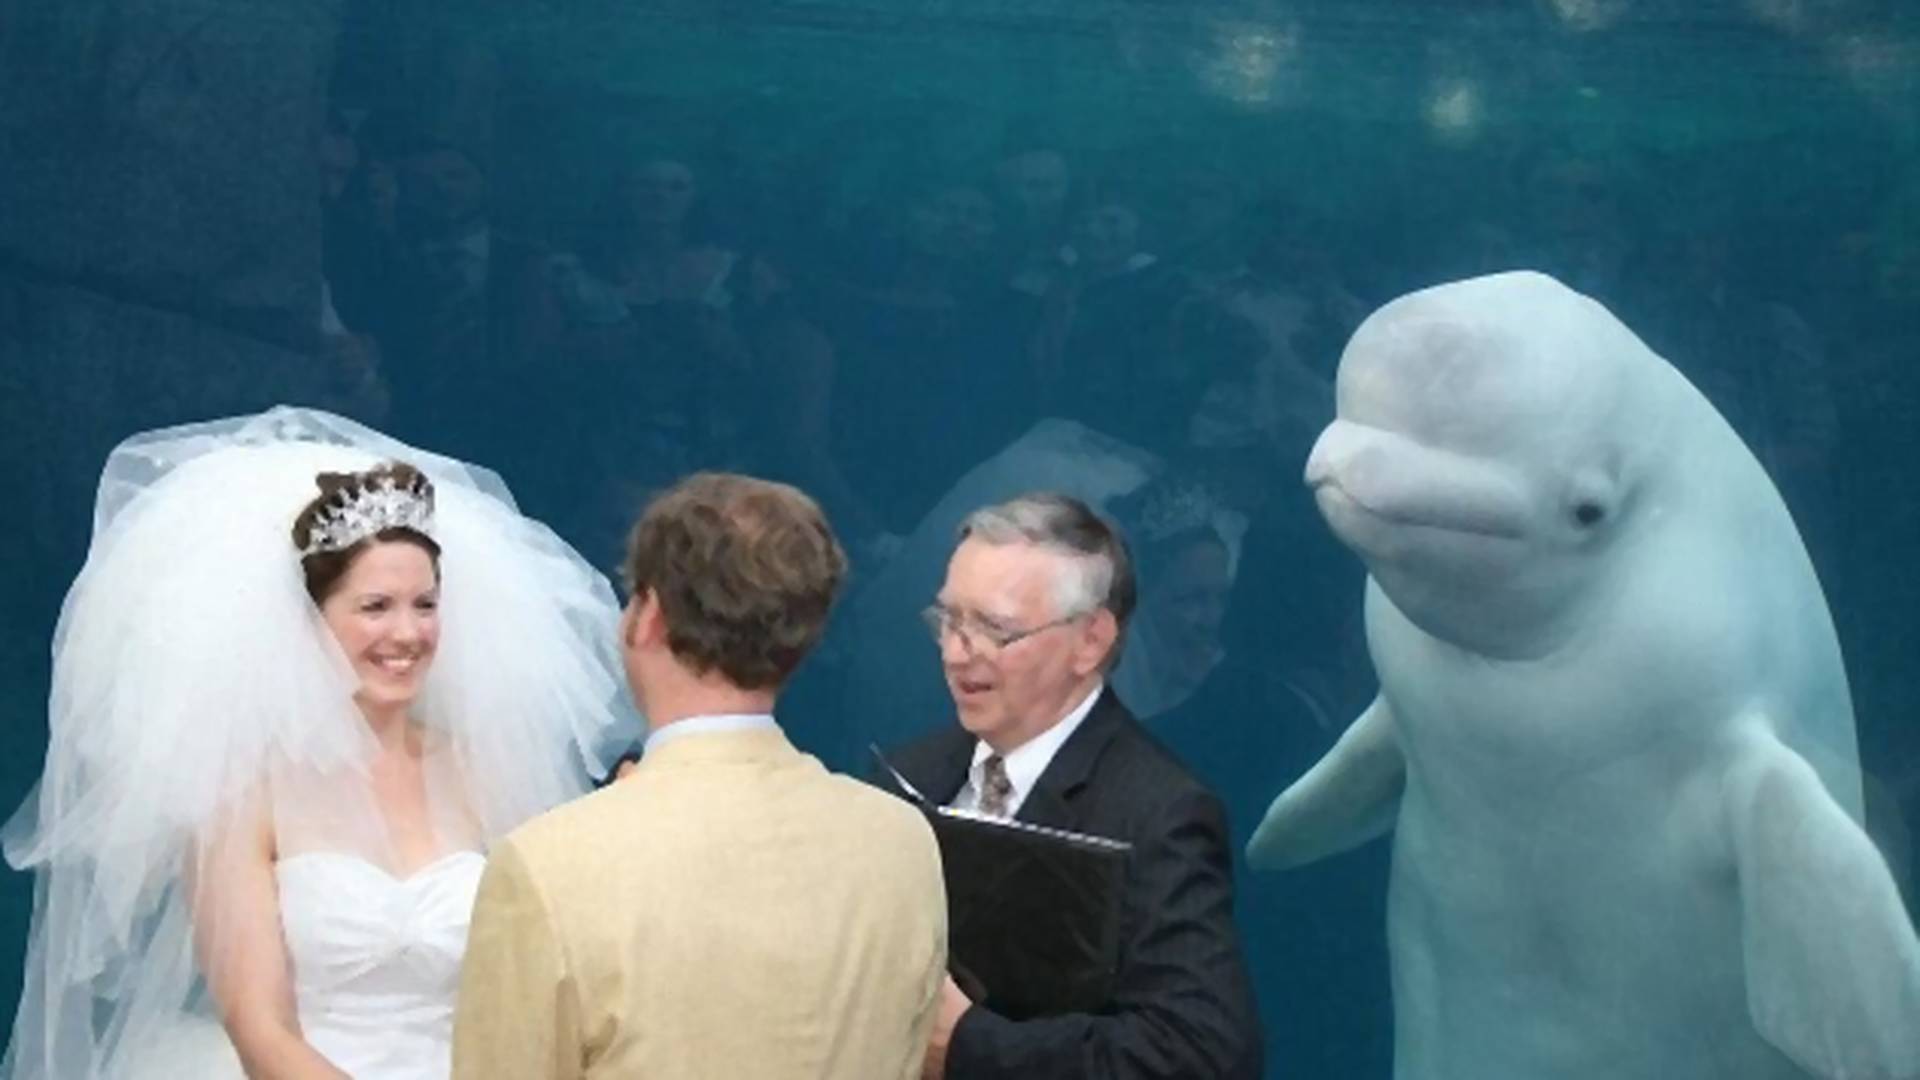 Nezvani gost na venčanju postao hit na internetu